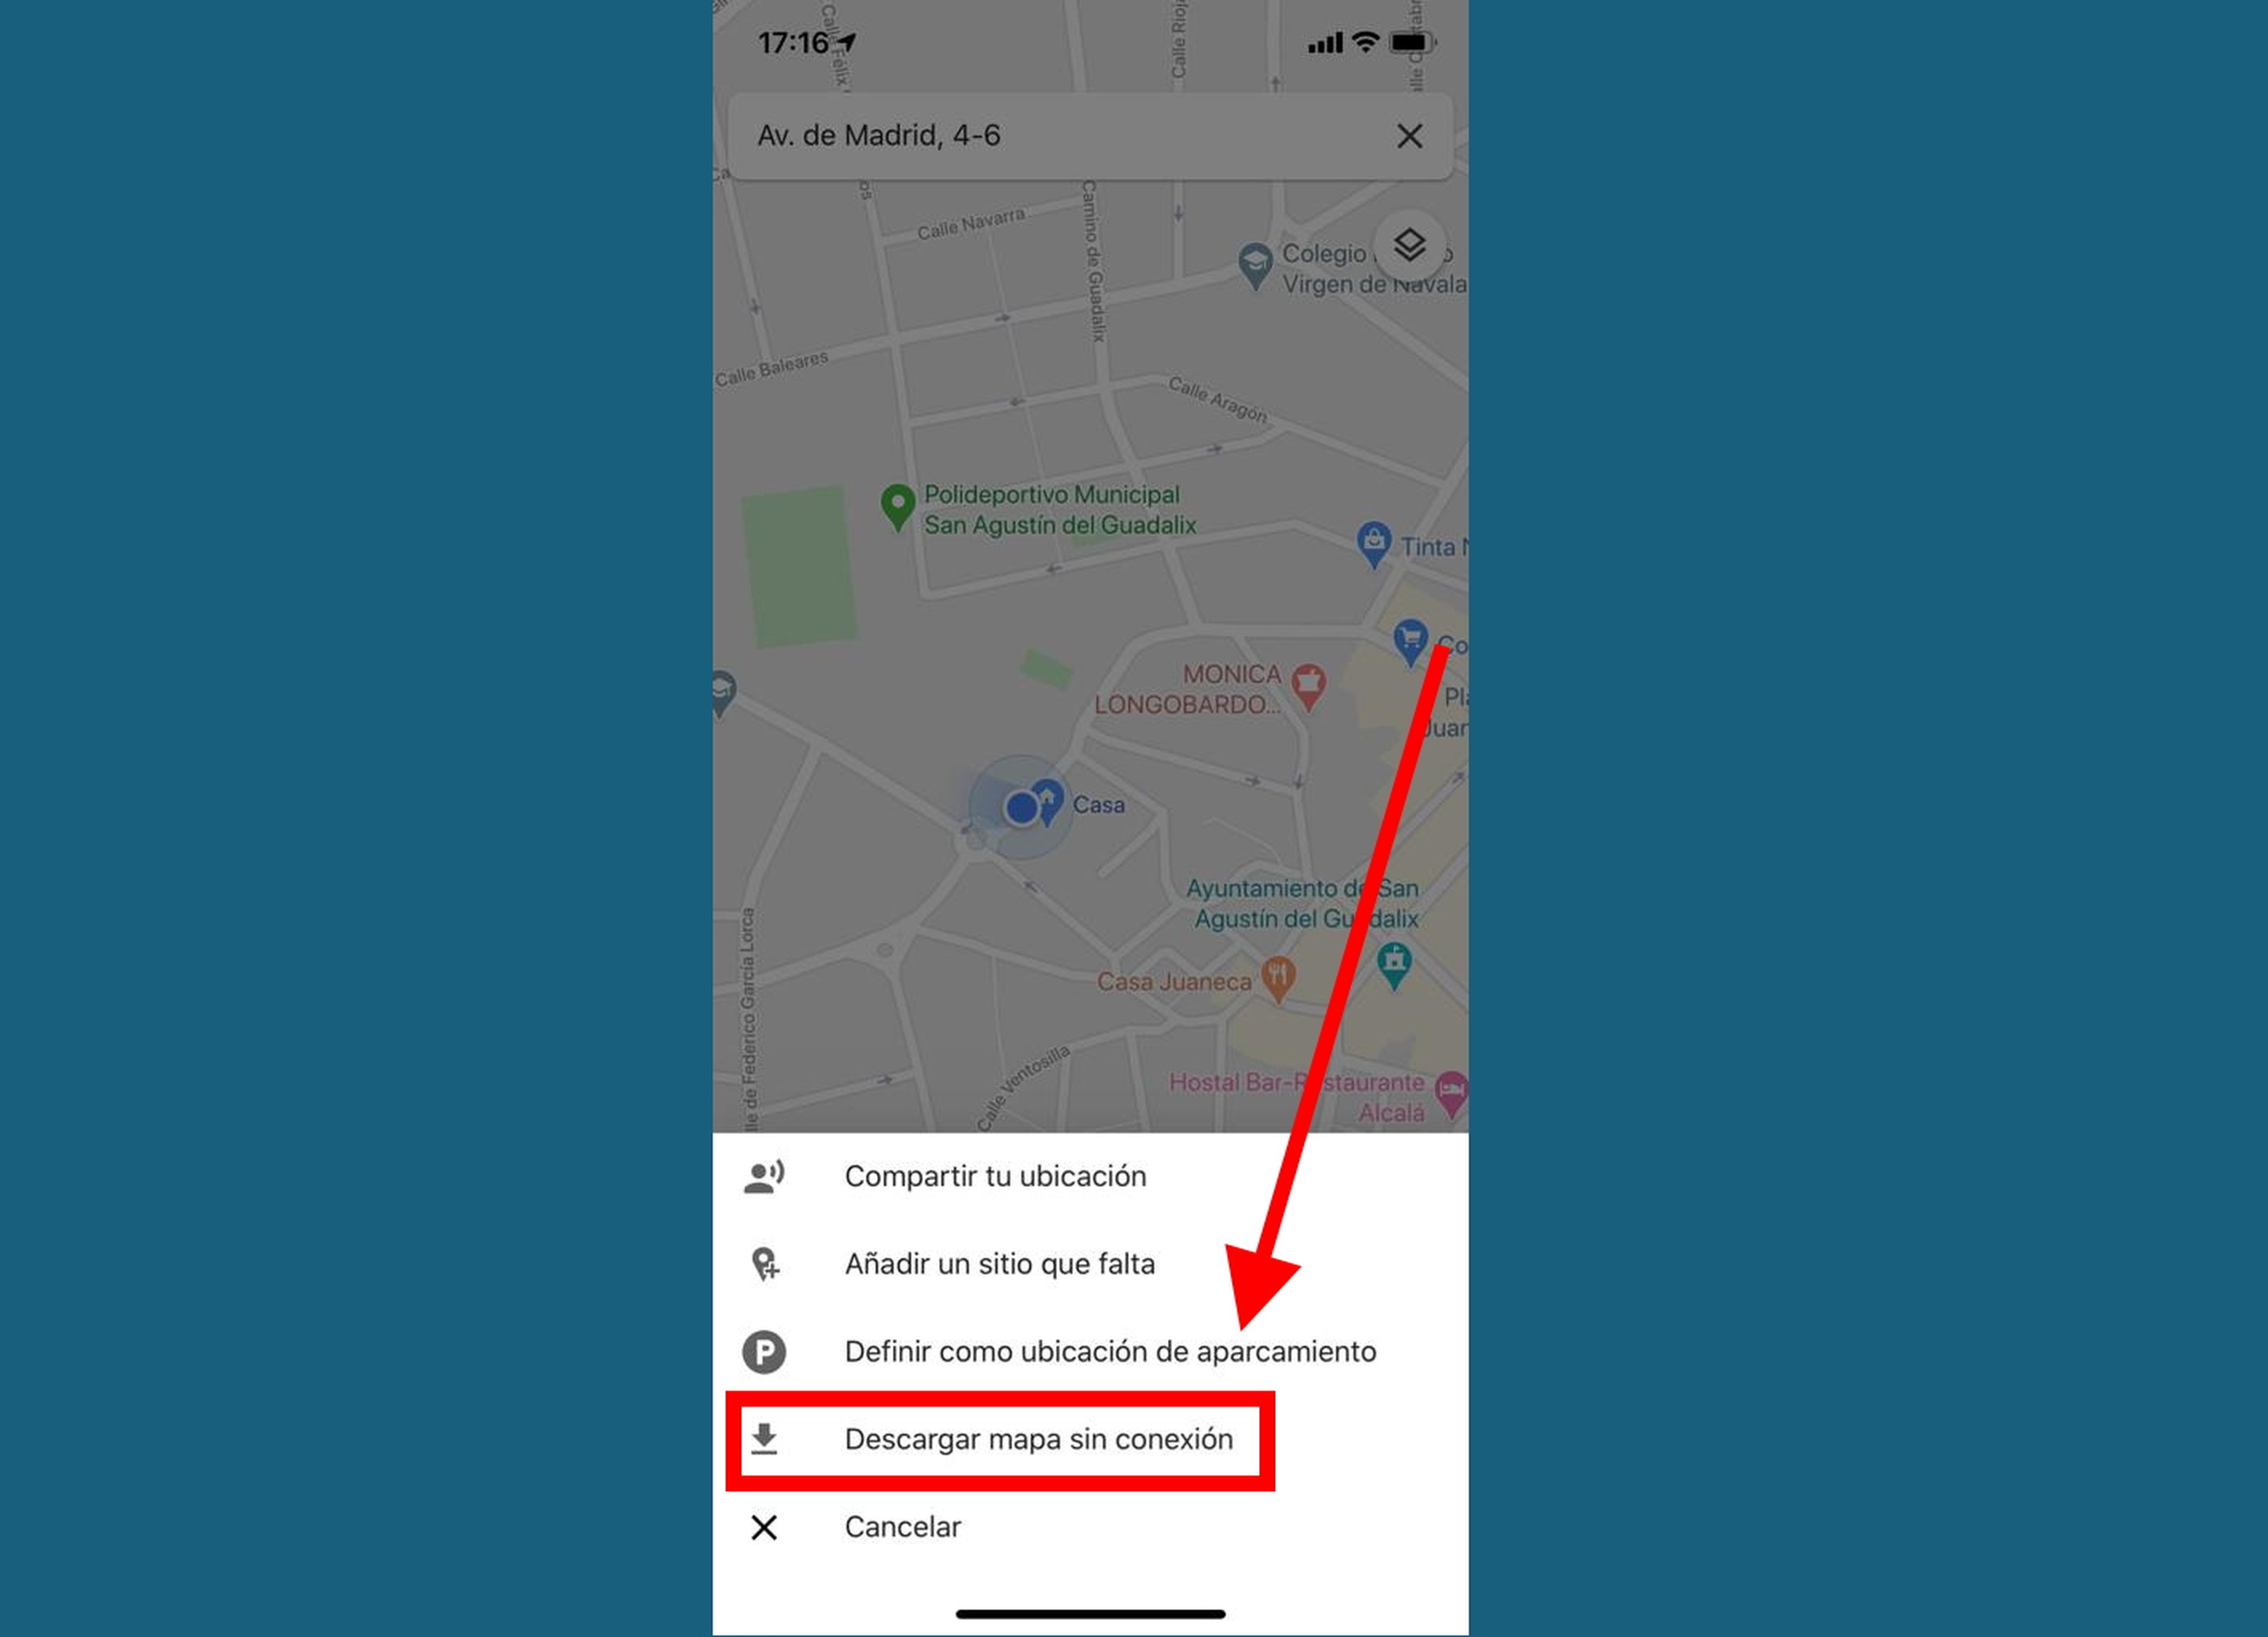 Si no tienes Internet, también tienes la opción de descargarte el mapa para consultarlo cuando quieras en Google Maps